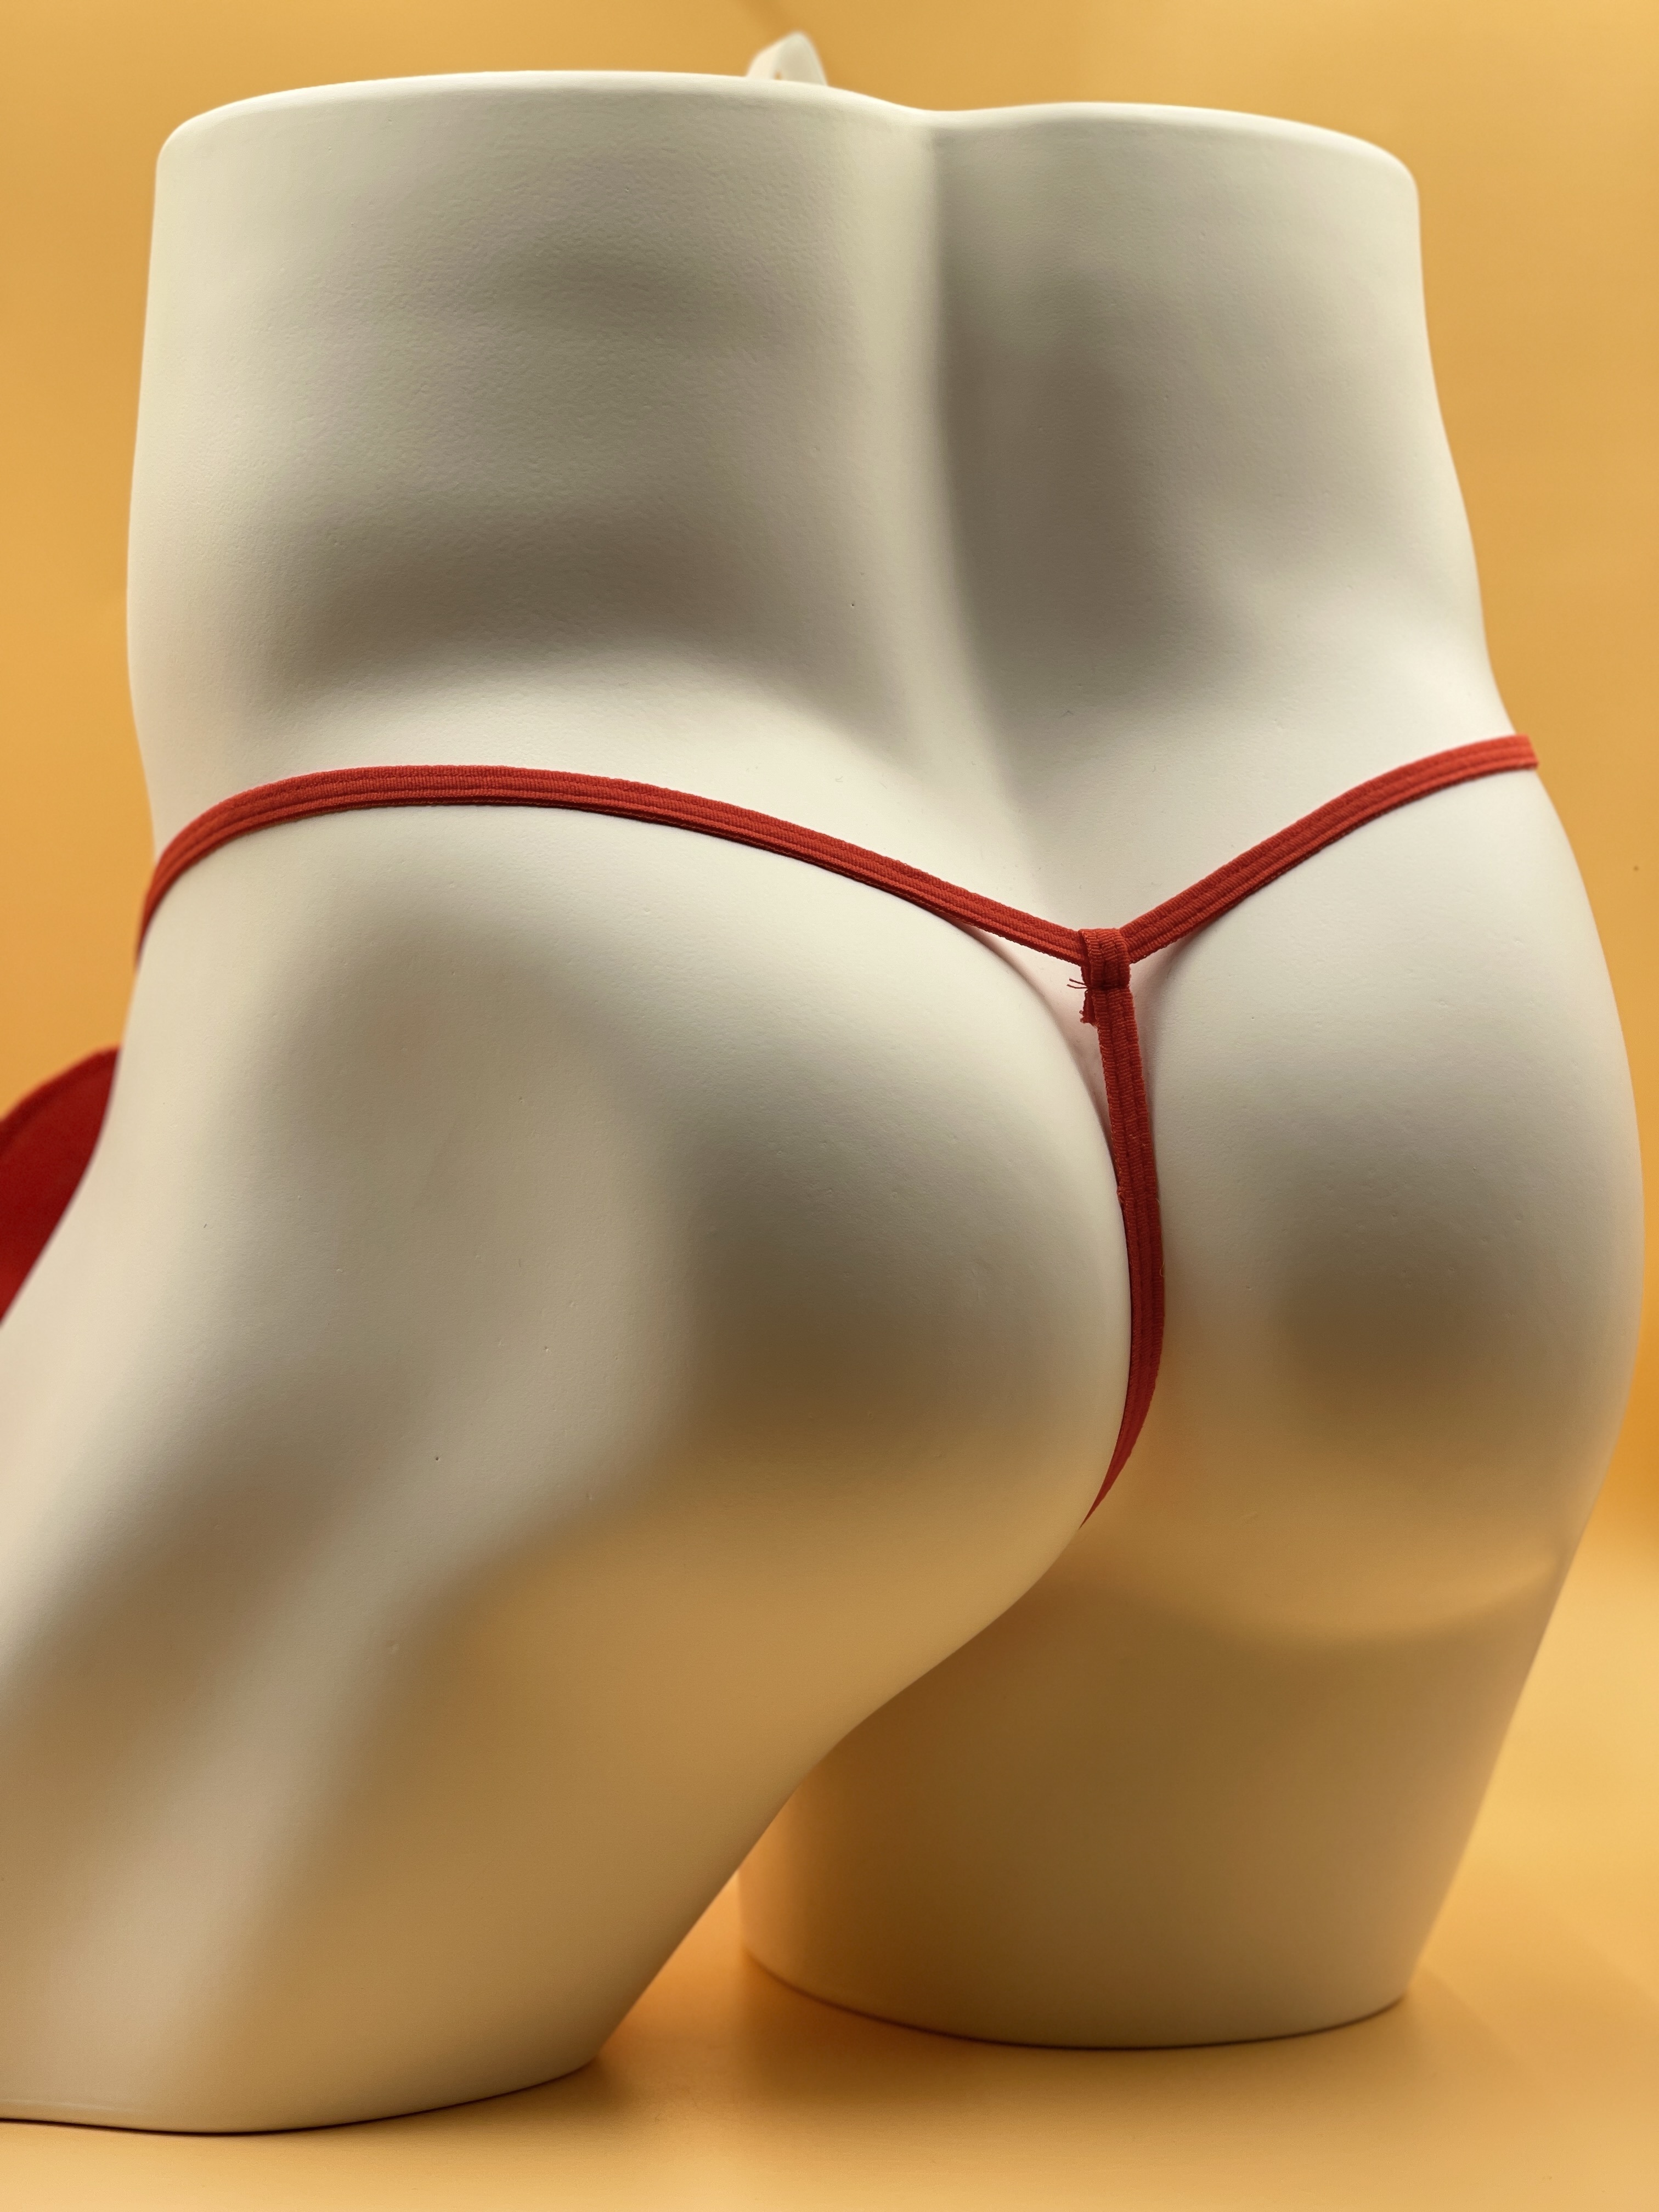 Men Novelty Elephant G-strings Thongs Panties Underwear Briefs Lingerie  Underpants